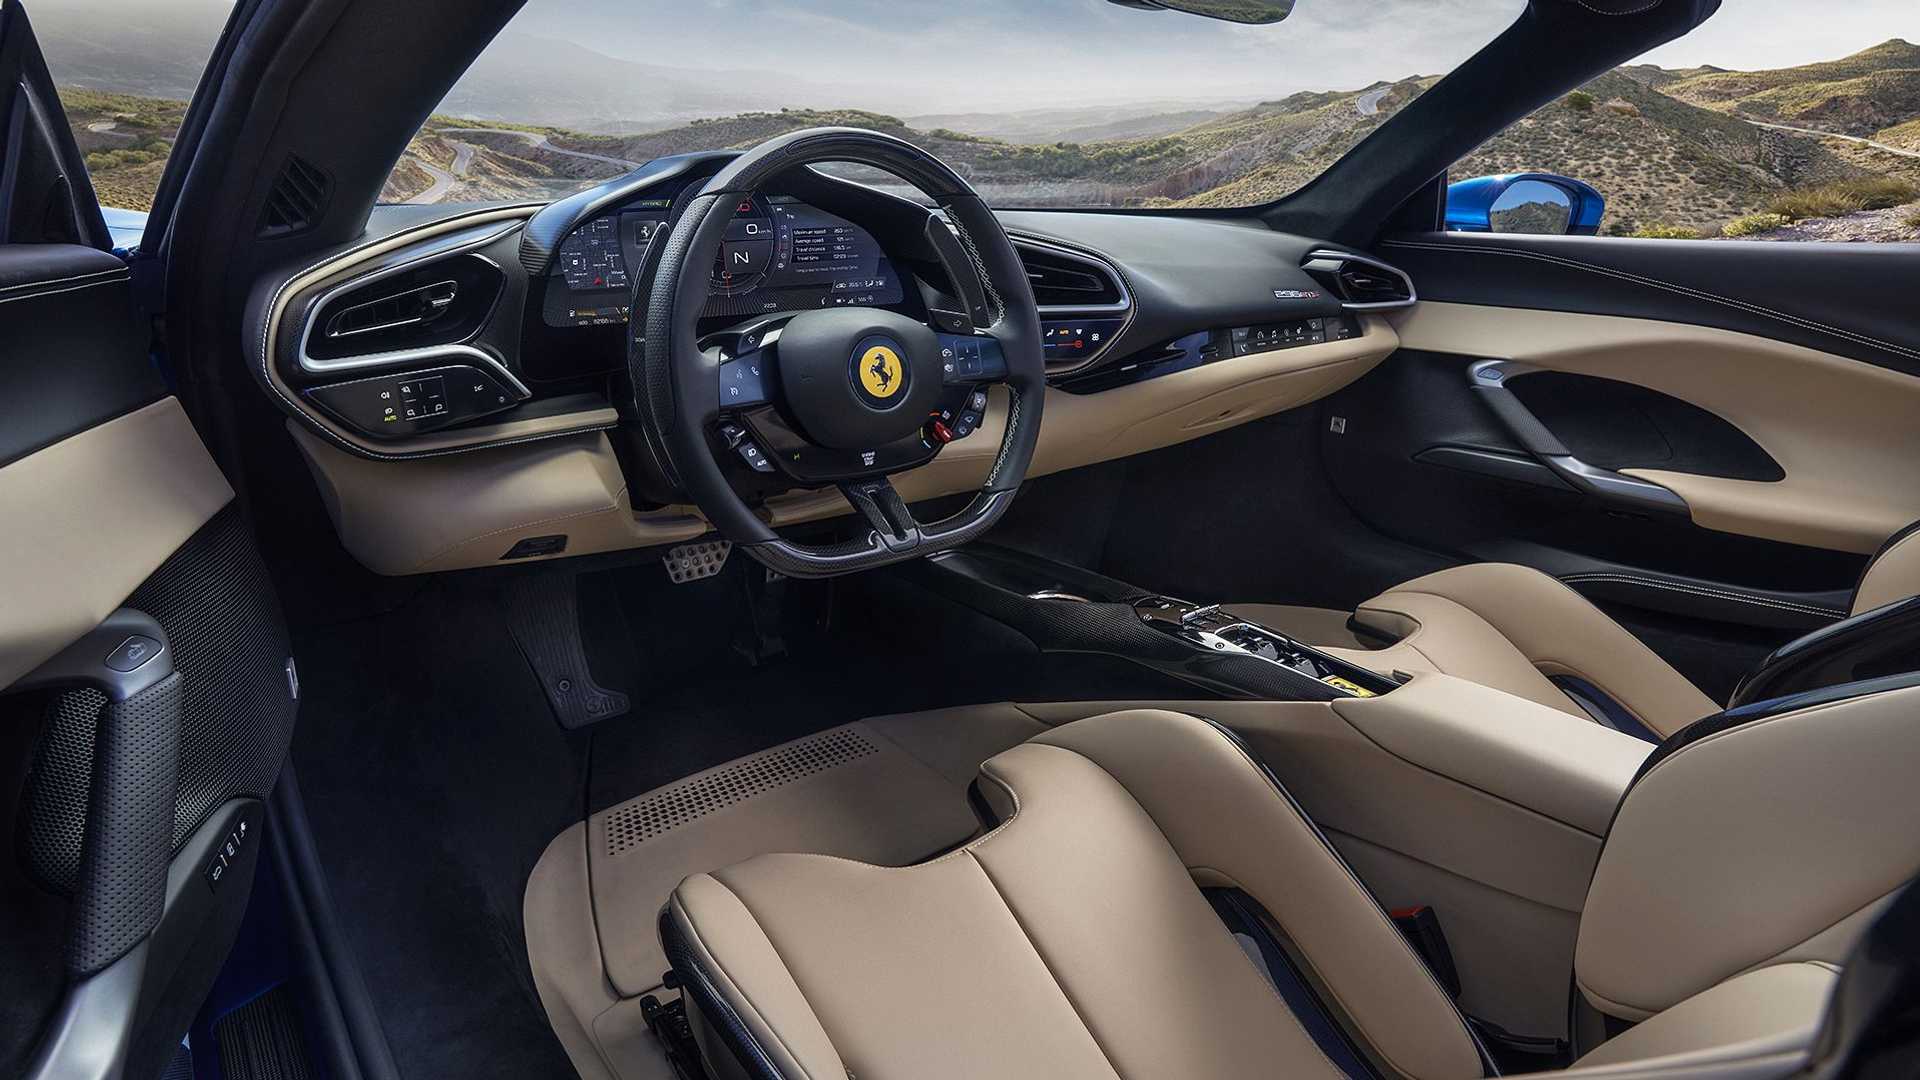 Ferrari построила 830-сильный гибрид со складной крышей